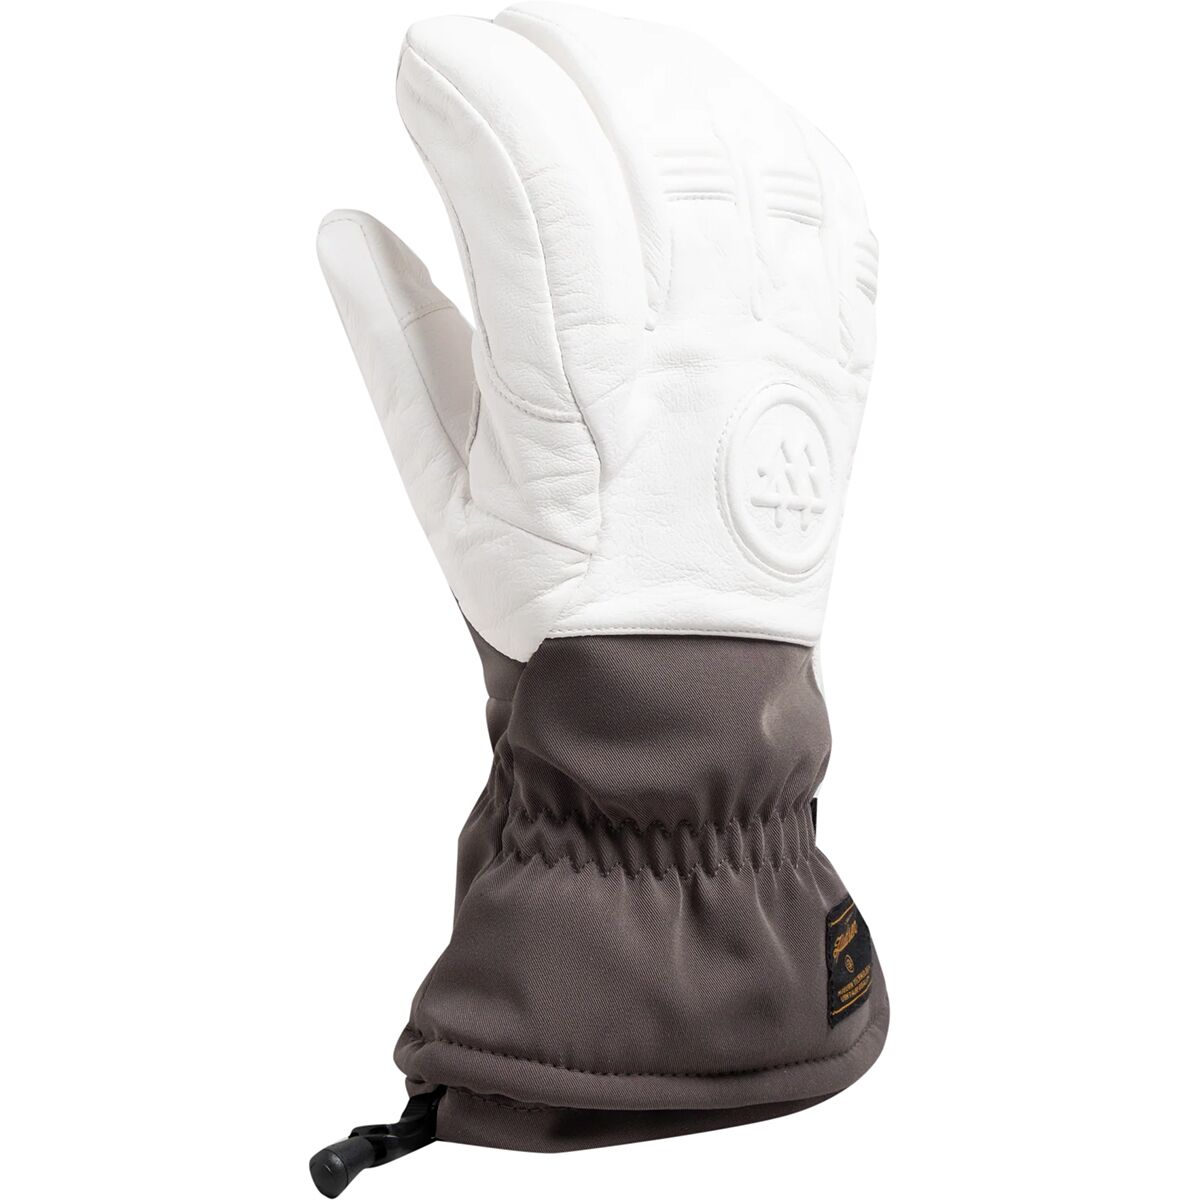 Swany Skylar 2.1 Glove - Men's